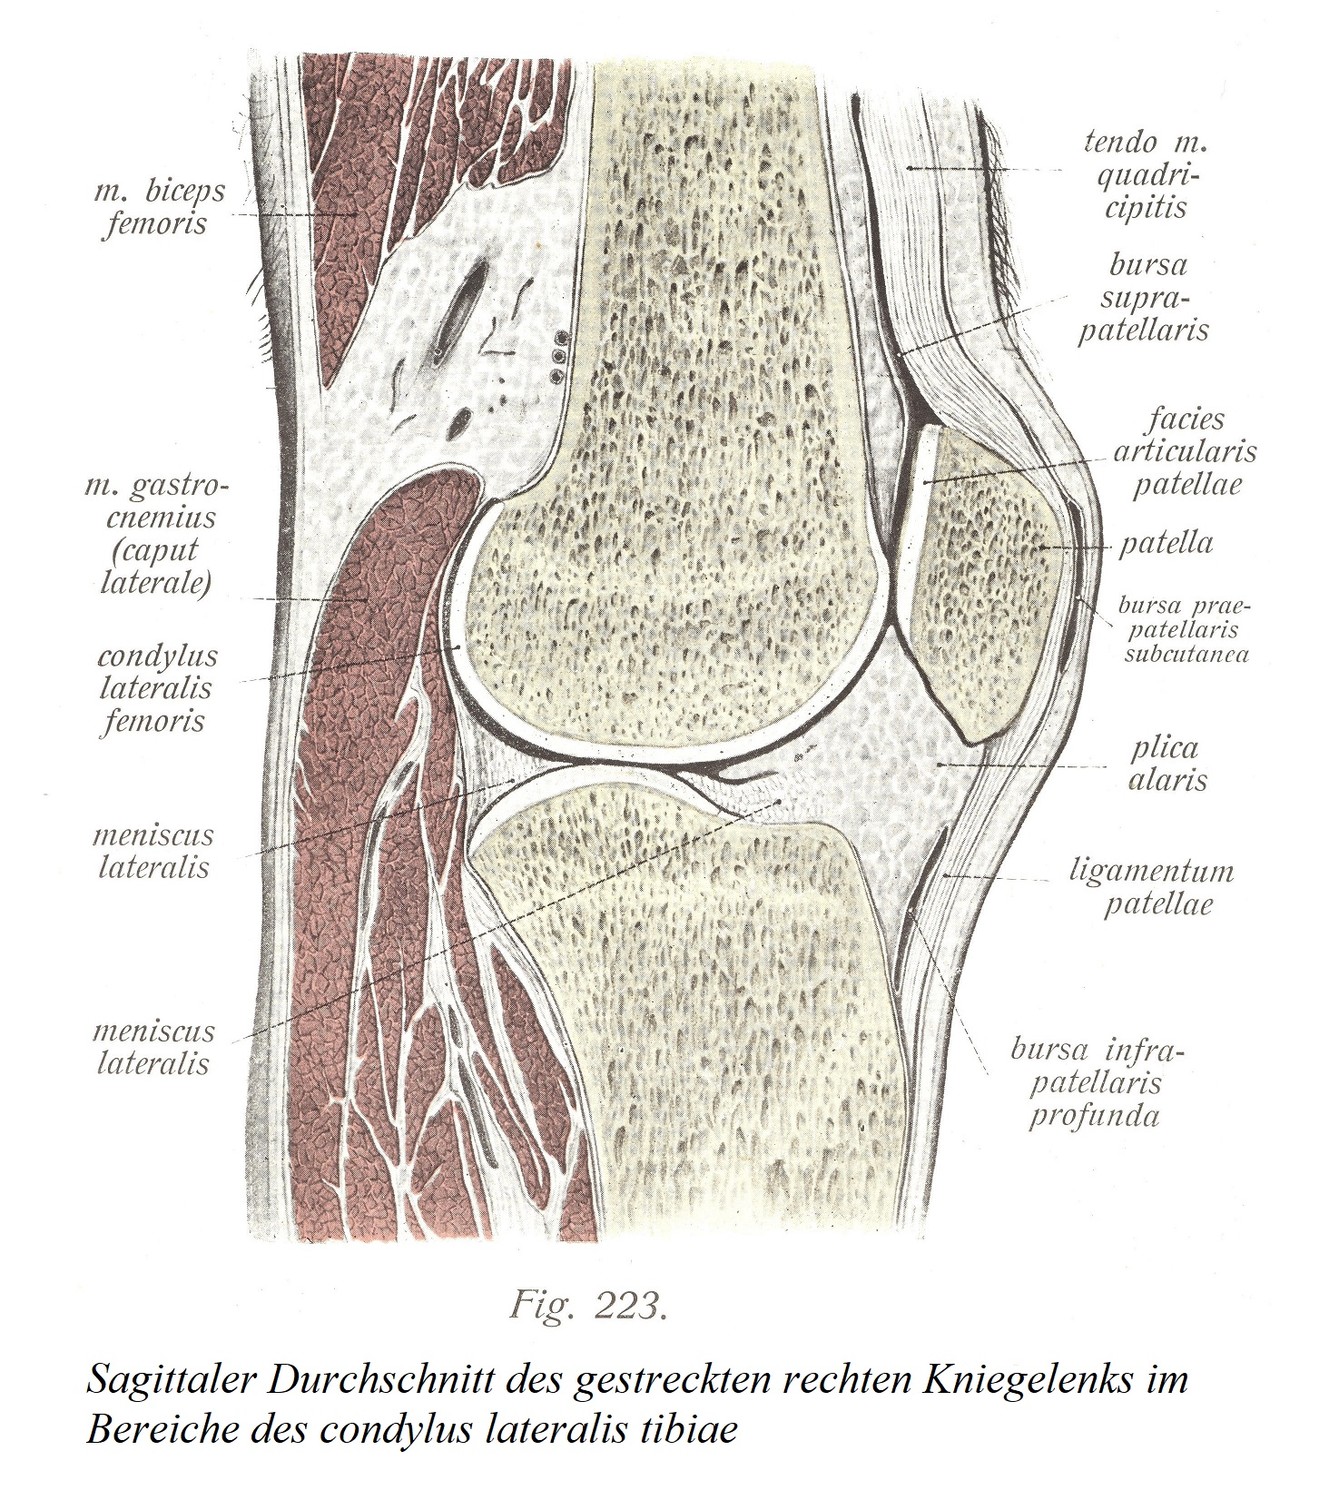 Сагиттальный разрез разогнутого правого коленного сустава в области латерального мыщелка большеберцовой кости